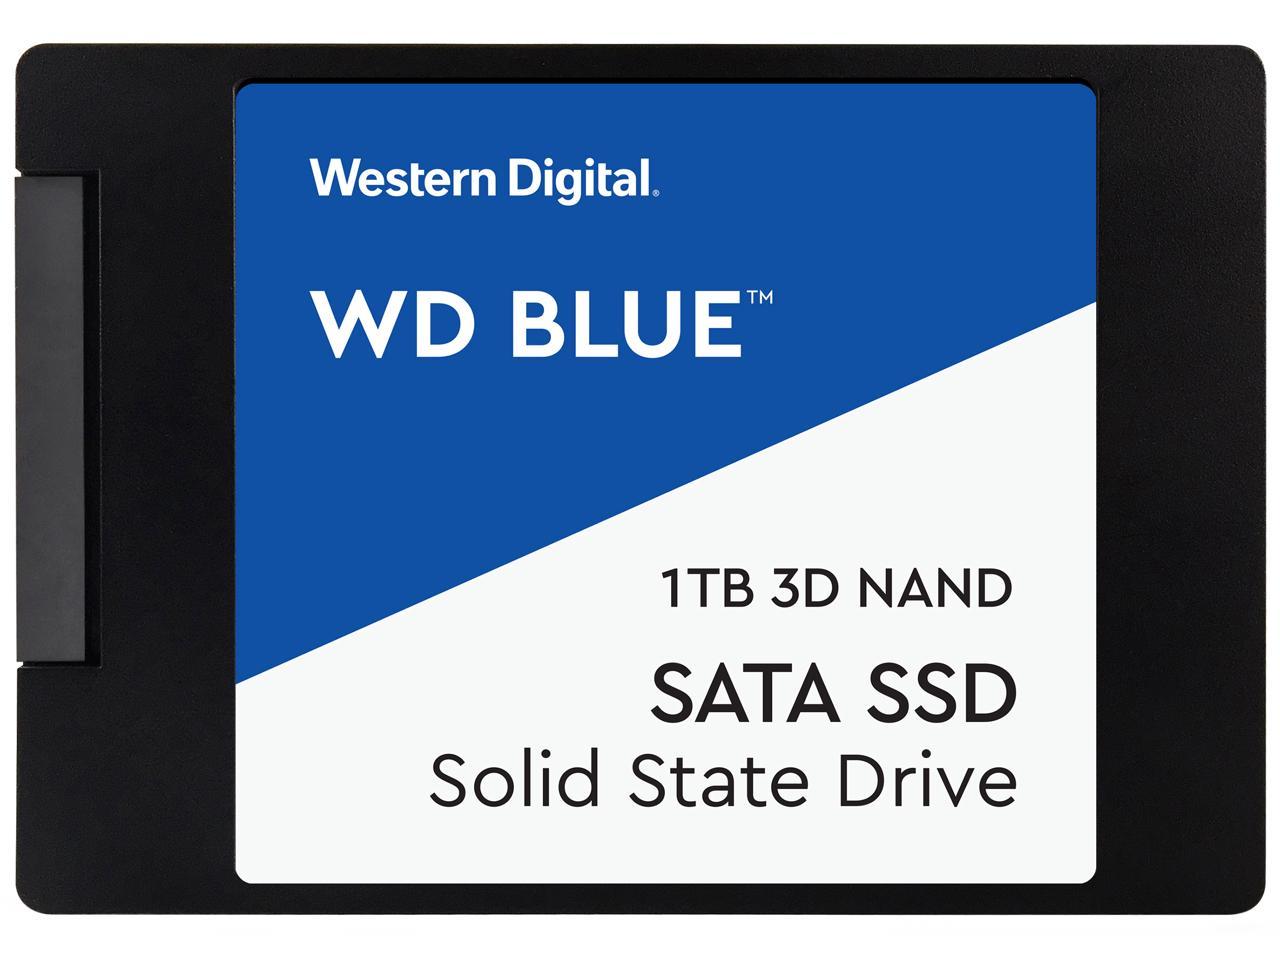 Newegg WD Blue 3D NAND 1TB Internal SSD - SATA III 6Gb/s 2.5"/7mm Solid State Drive - WDS100T2B0A $91  Free shipping